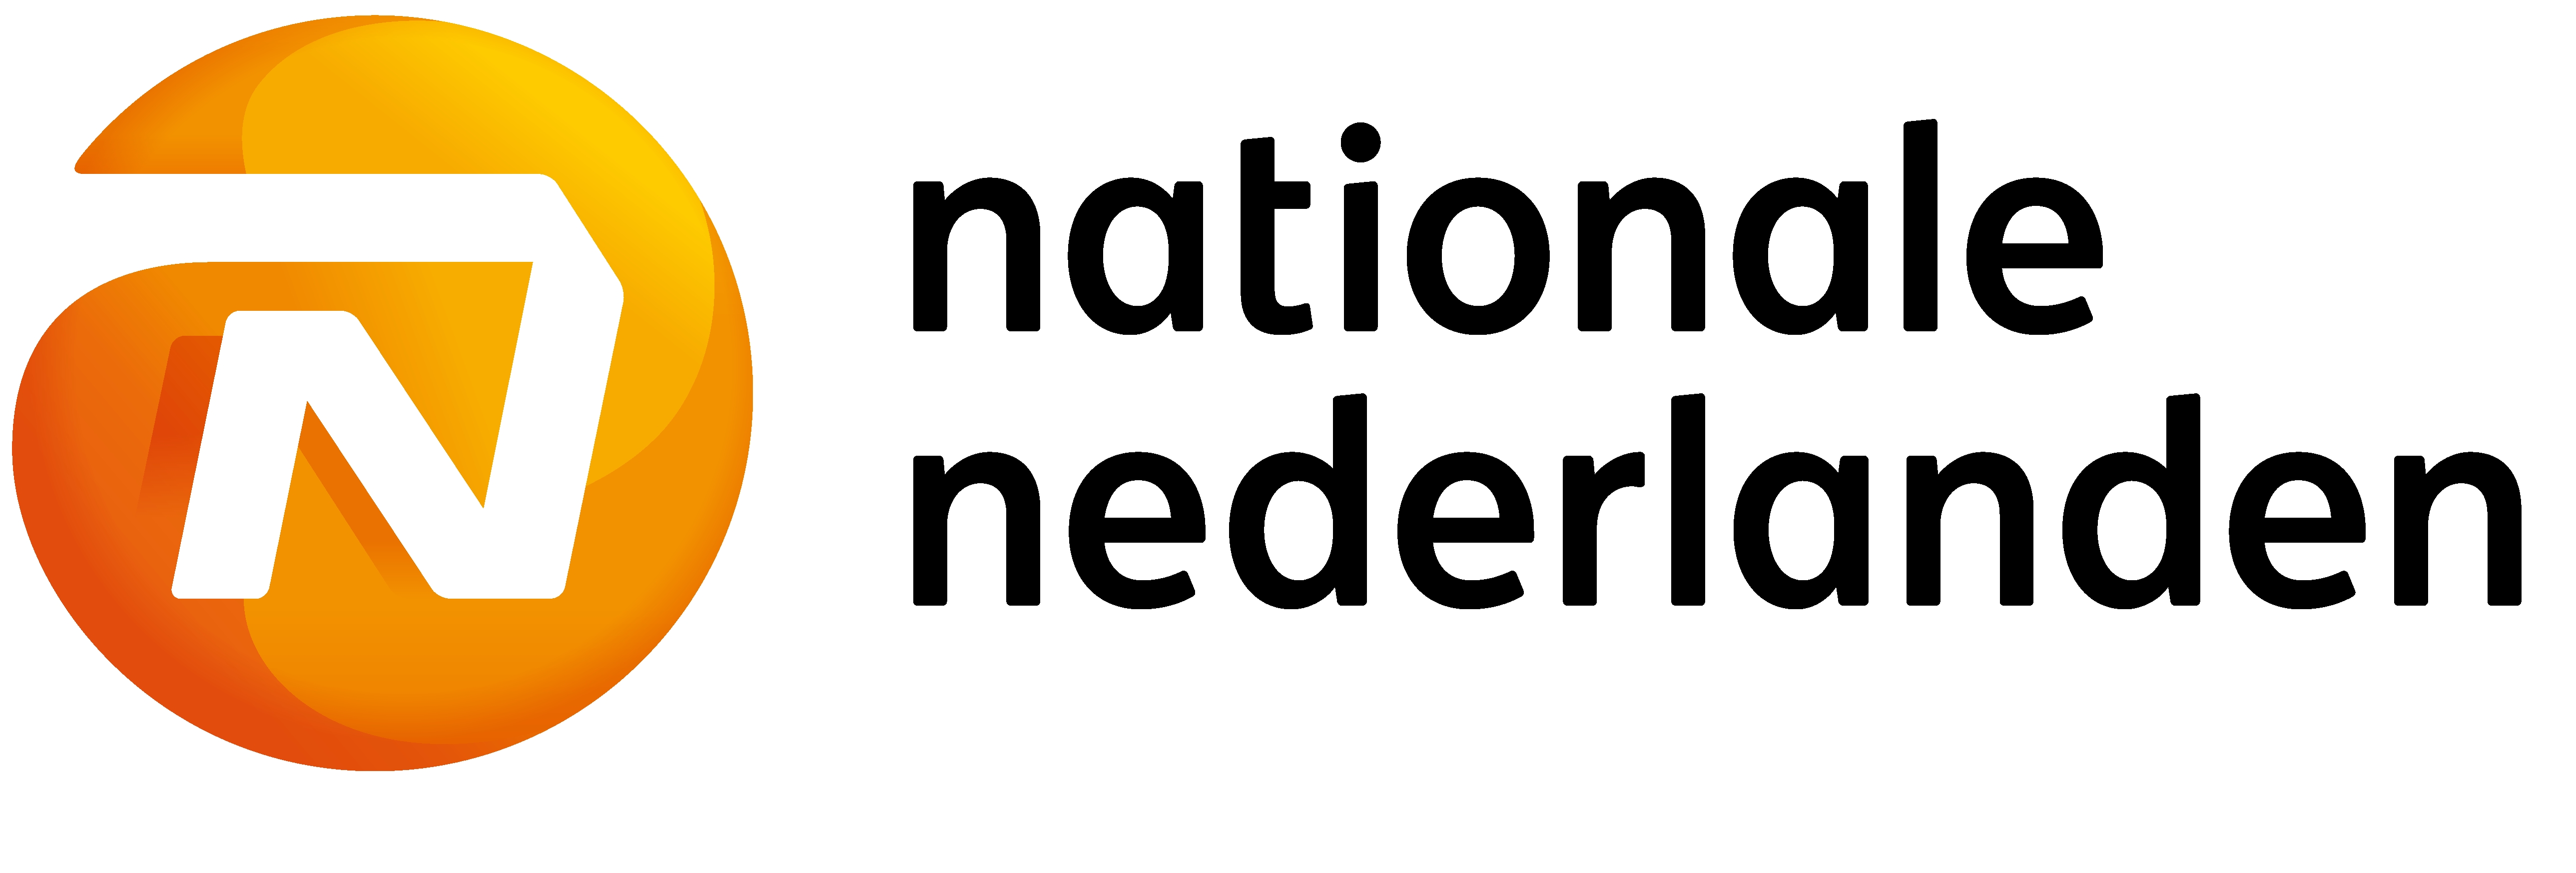 nationale_nederlanden_logo